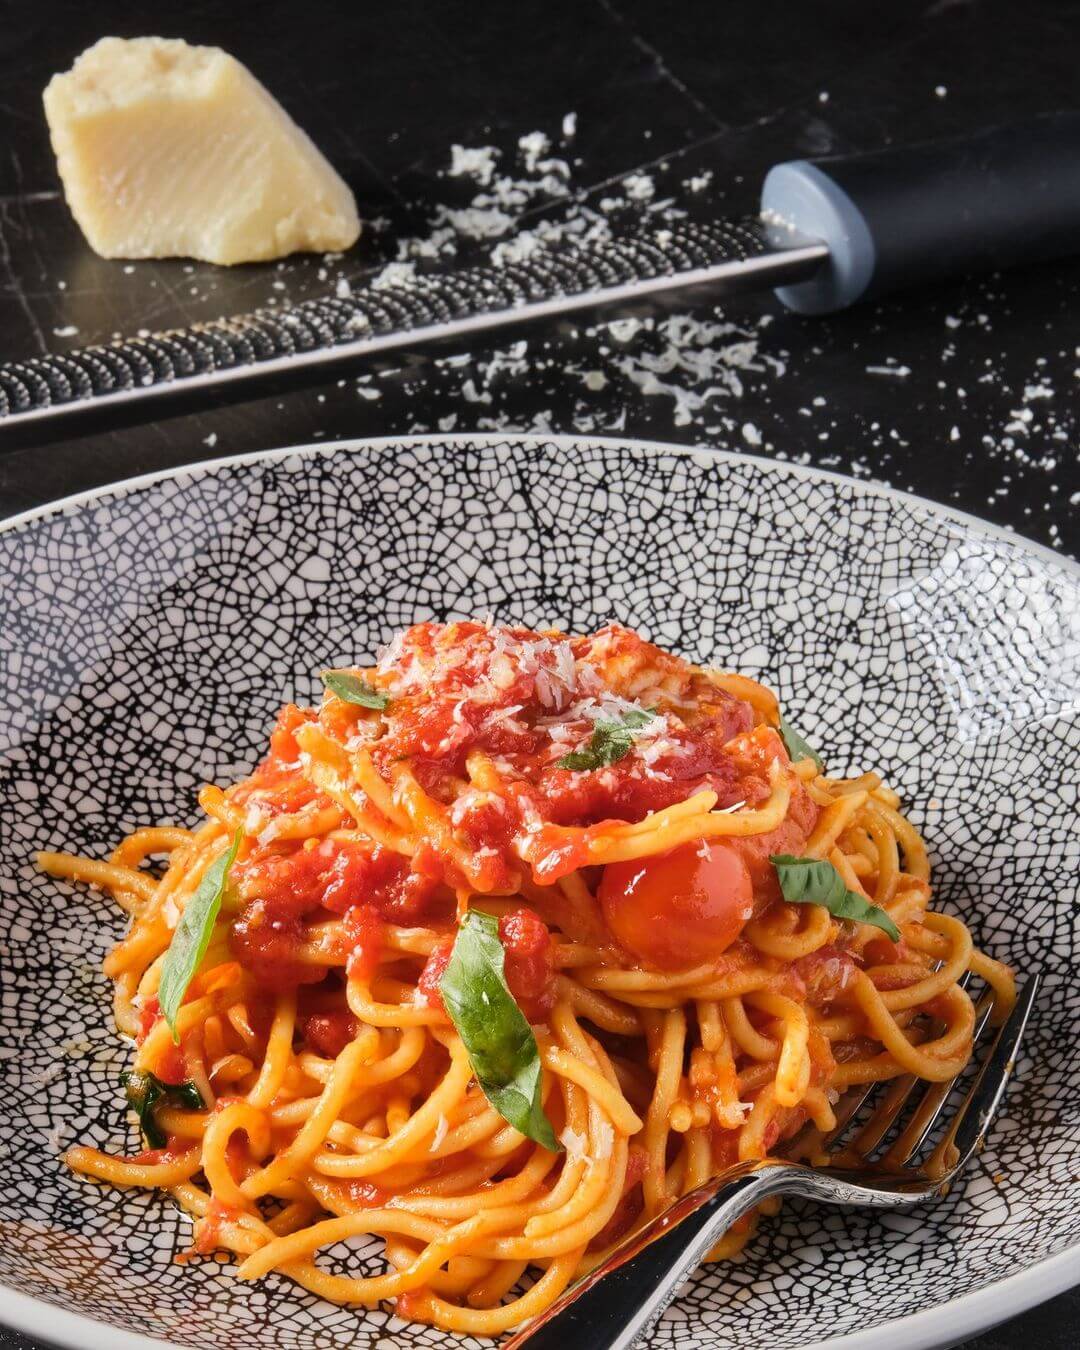 basilico vegas local spaghetti